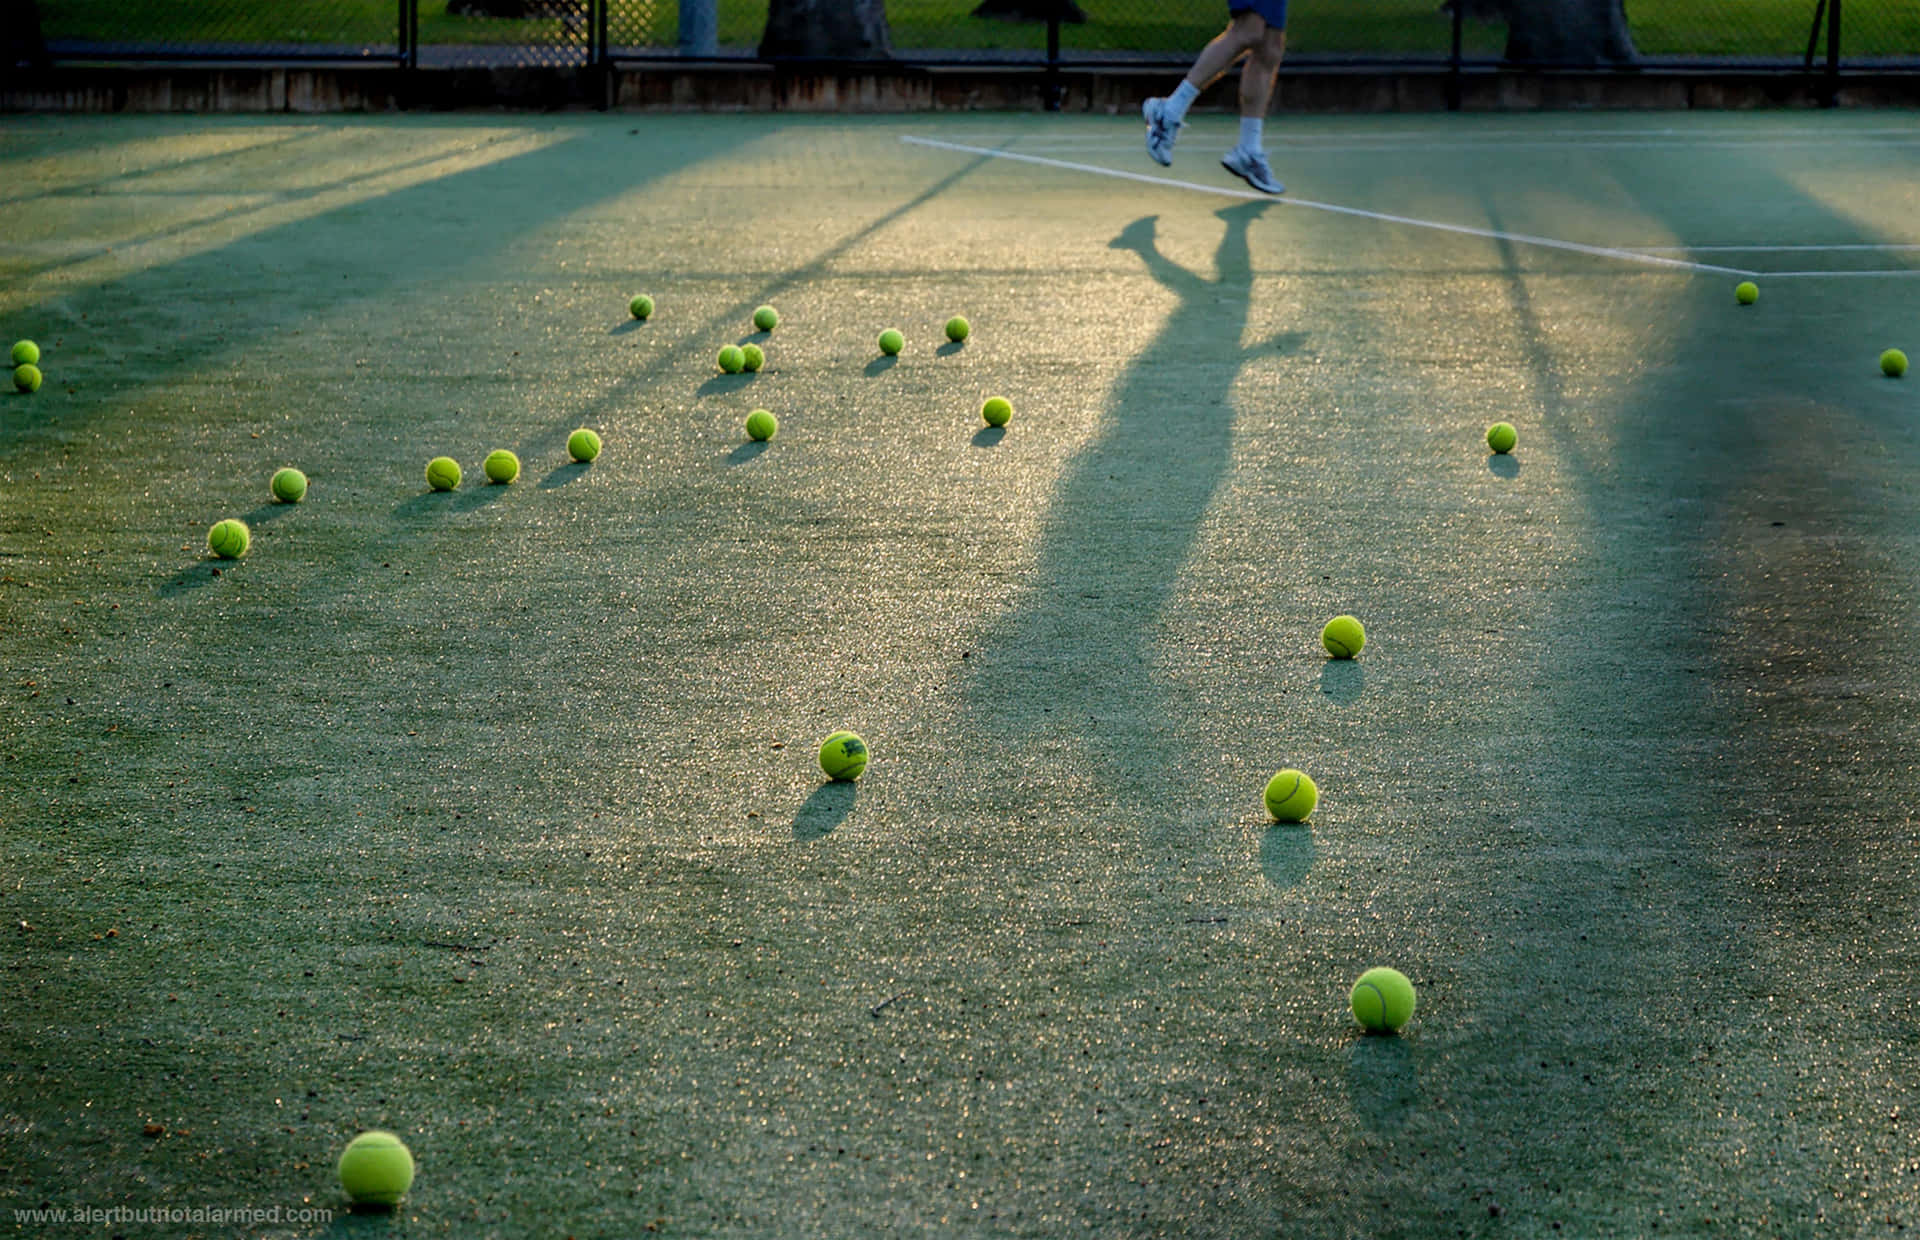 Enperfekt Vit Tennisboll Studsar På En Grön Tennisbana. Wallpaper